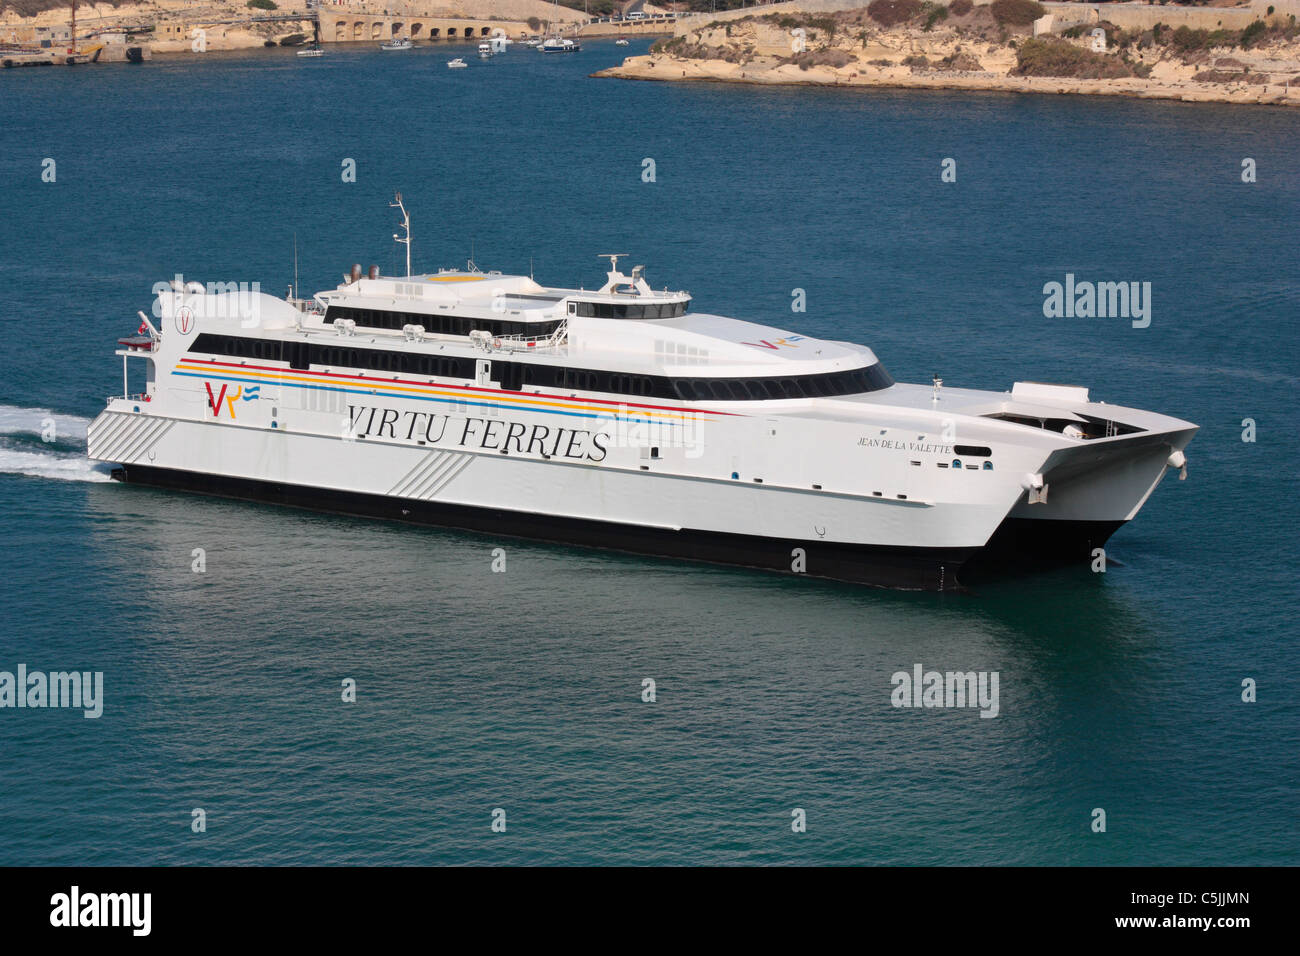 Il catamarano Jean de la Valette entrano in Malta il Grand Harbour Foto Stock